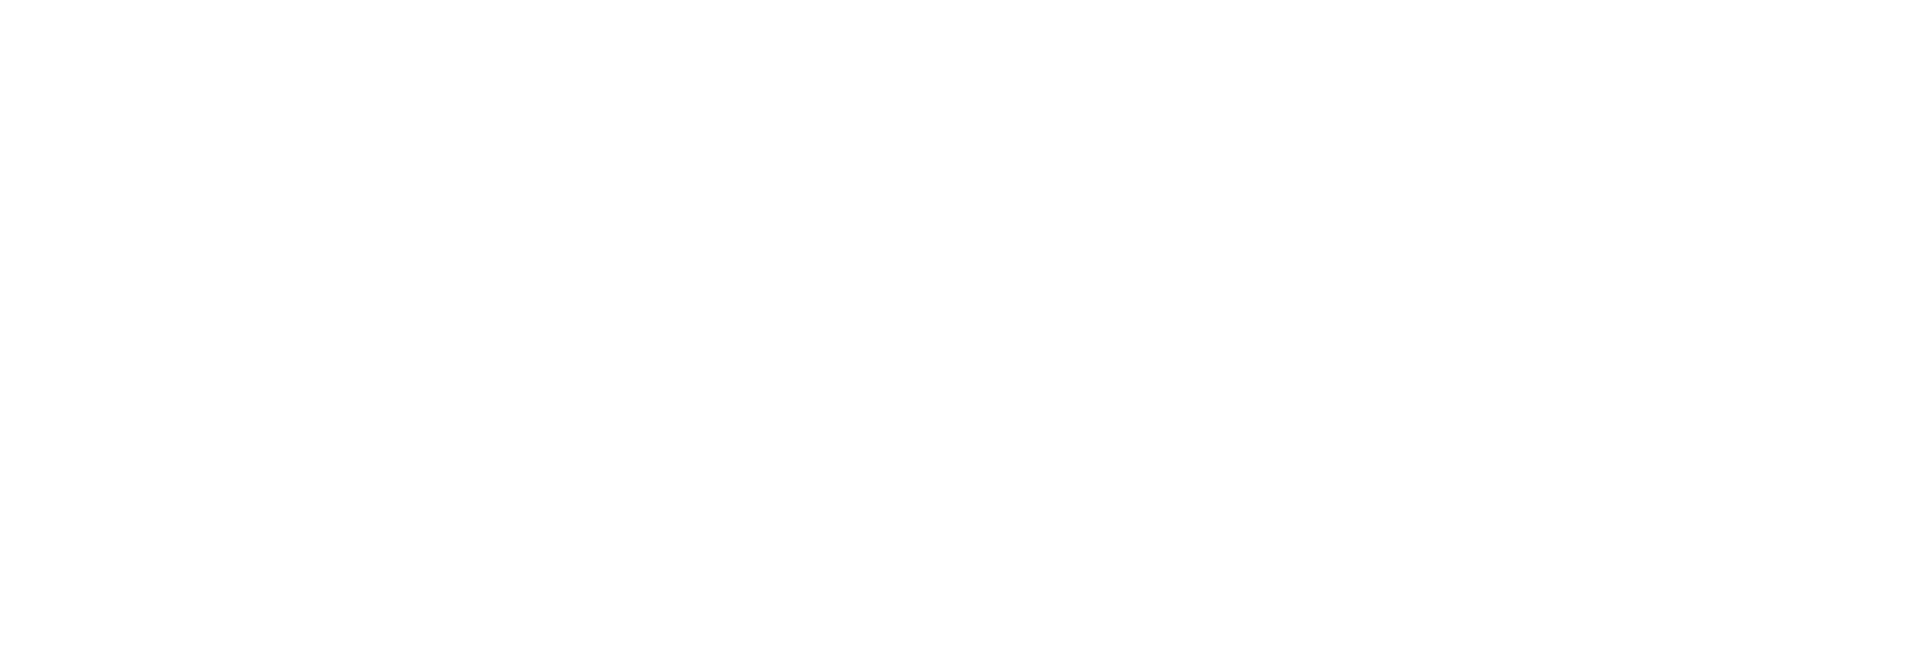 AZAR4 - Entwicklung eines Camper für 4x4 Pickup - azar background white - AZAR4®